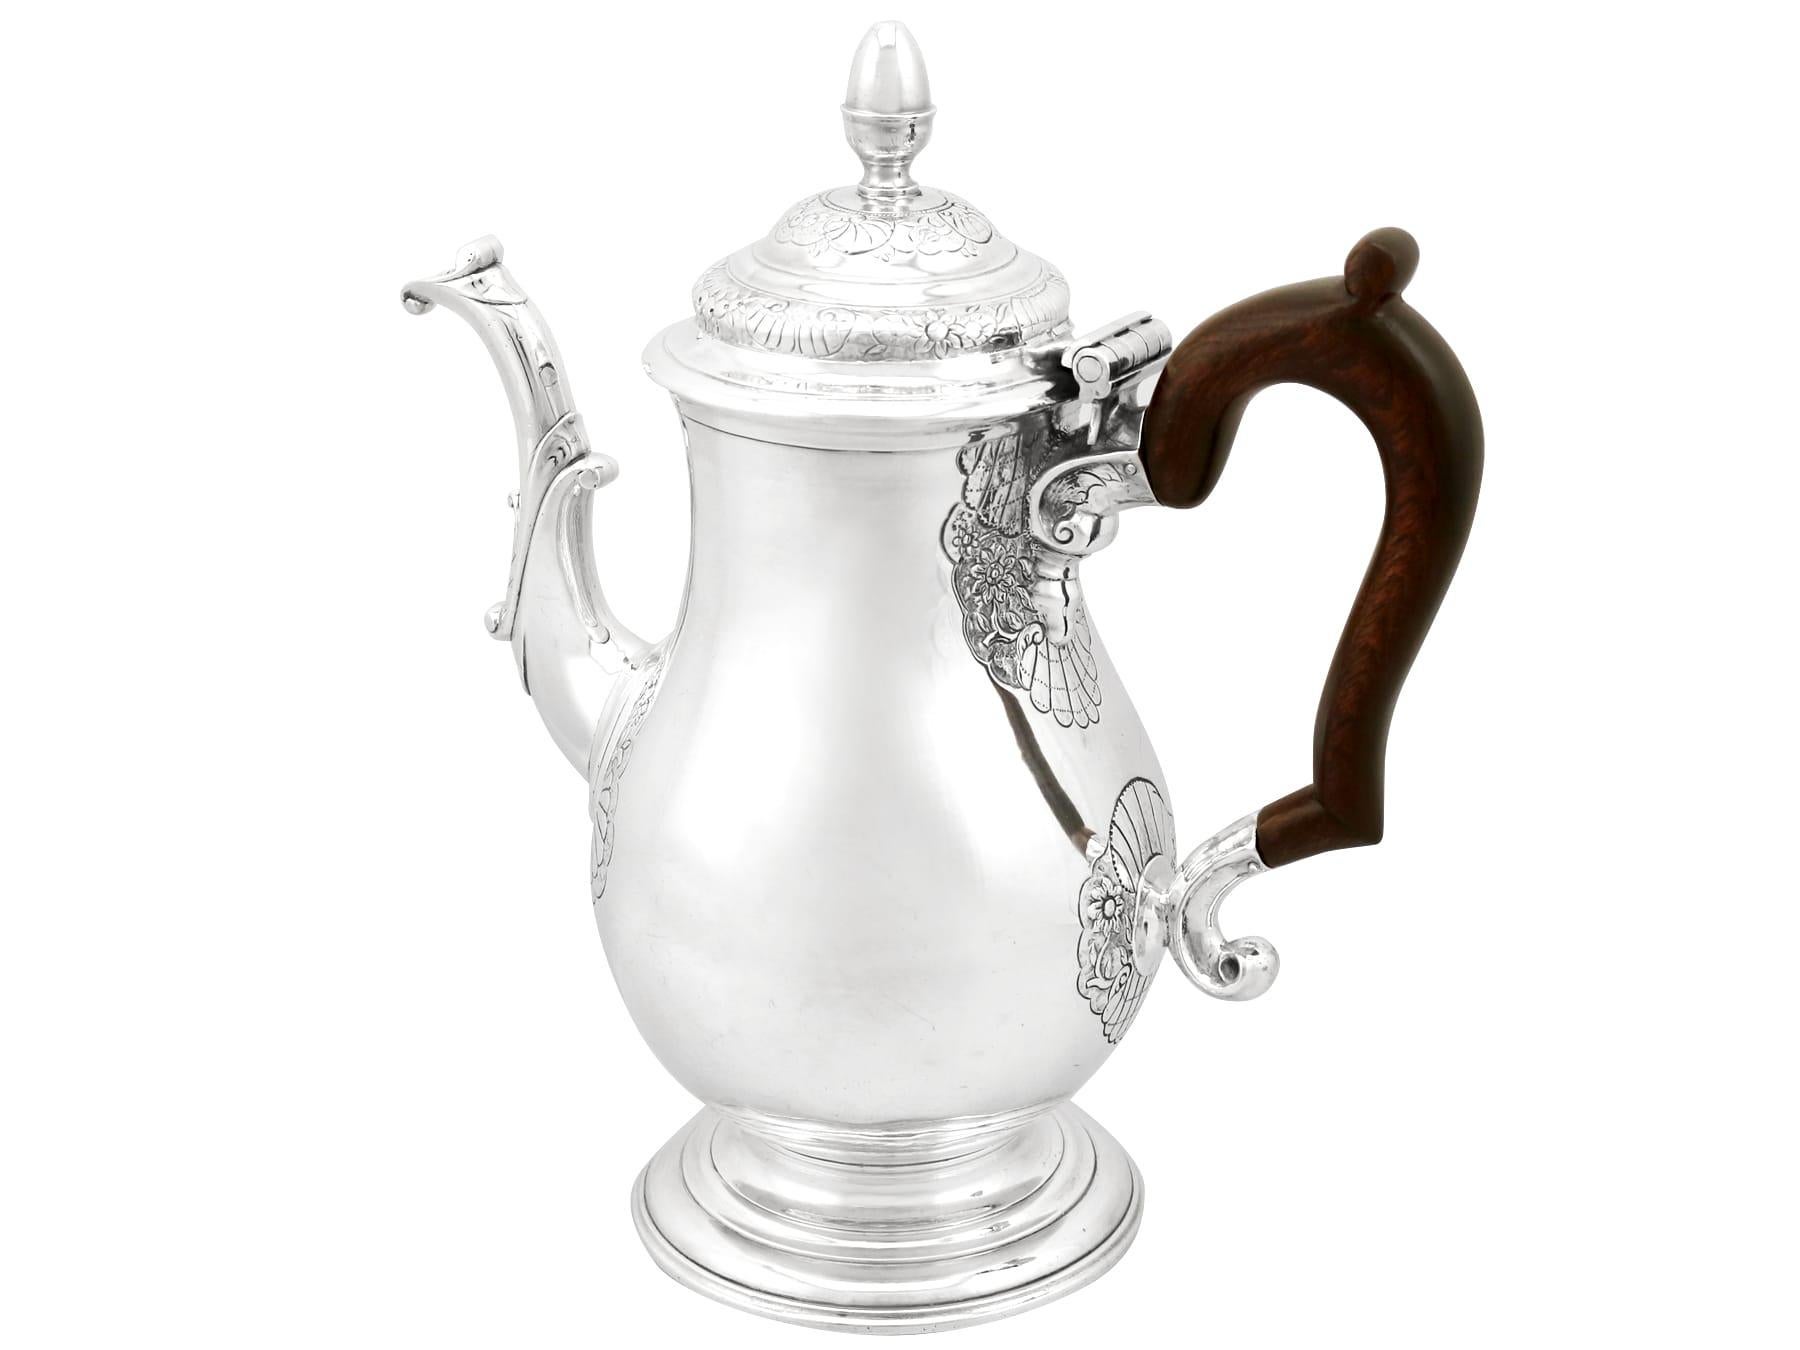 Eine außergewöhnliche, feine und beeindruckende antike George II Newcastle Sterling Silber Kaffeekanne, eine Ergänzung zu unserer Georgian Silber Teegeschirr Sammlung.

Diese außergewöhnliche antike George II Newcastle Sterling Silber Kaffeekanne